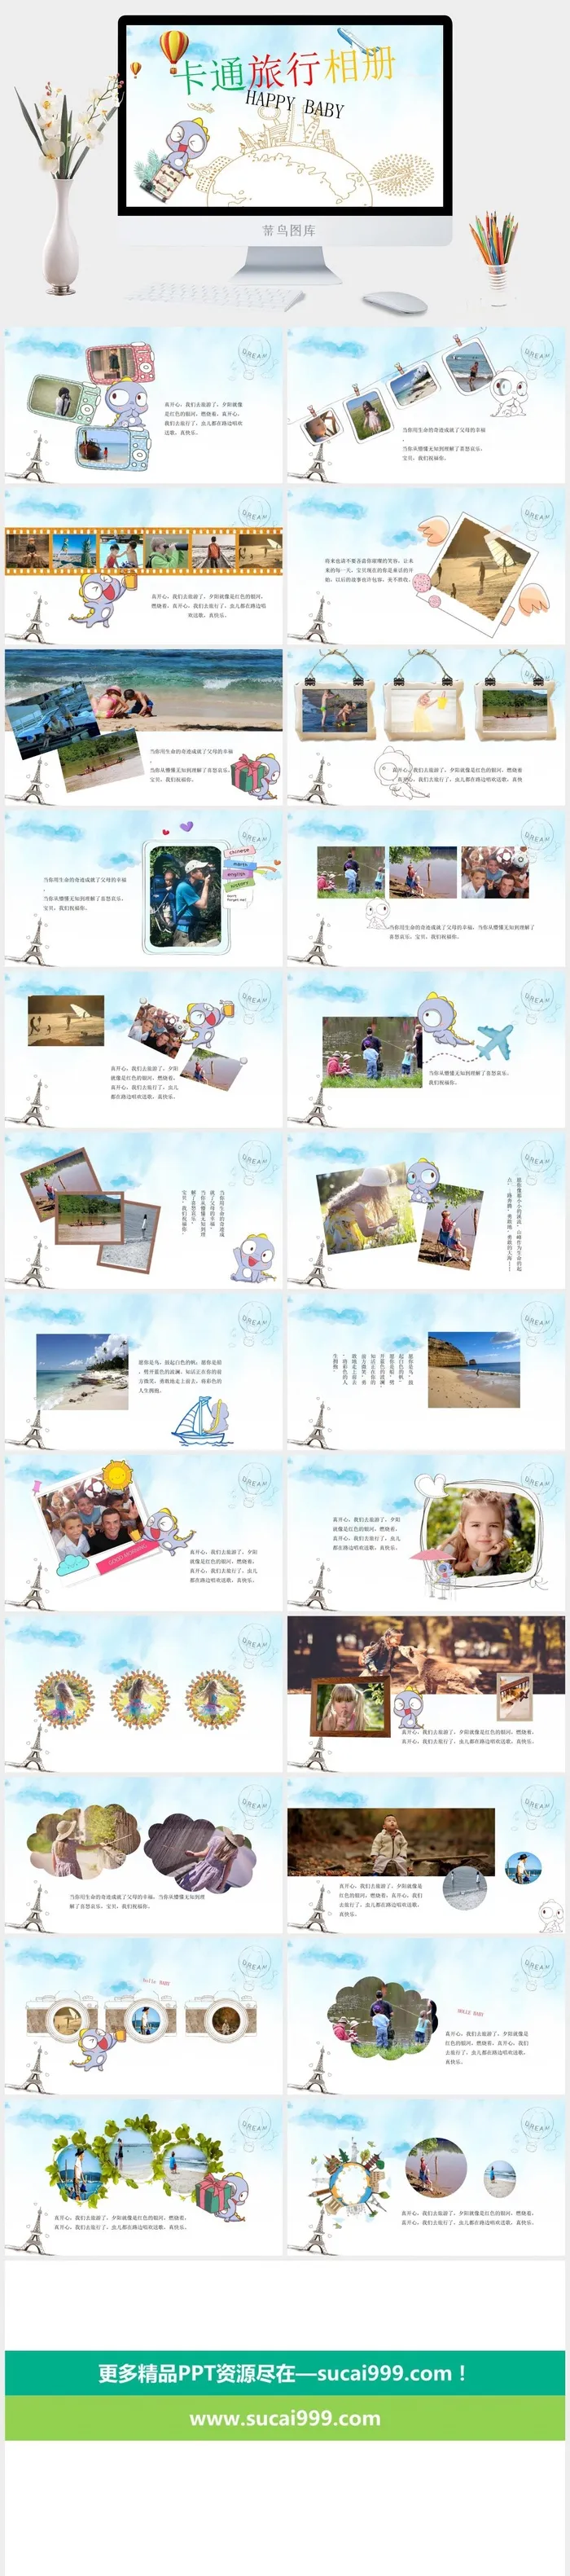 寒假暑假期生活PPT模板可爱儿童幼儿园小学生电子相册旅行动态